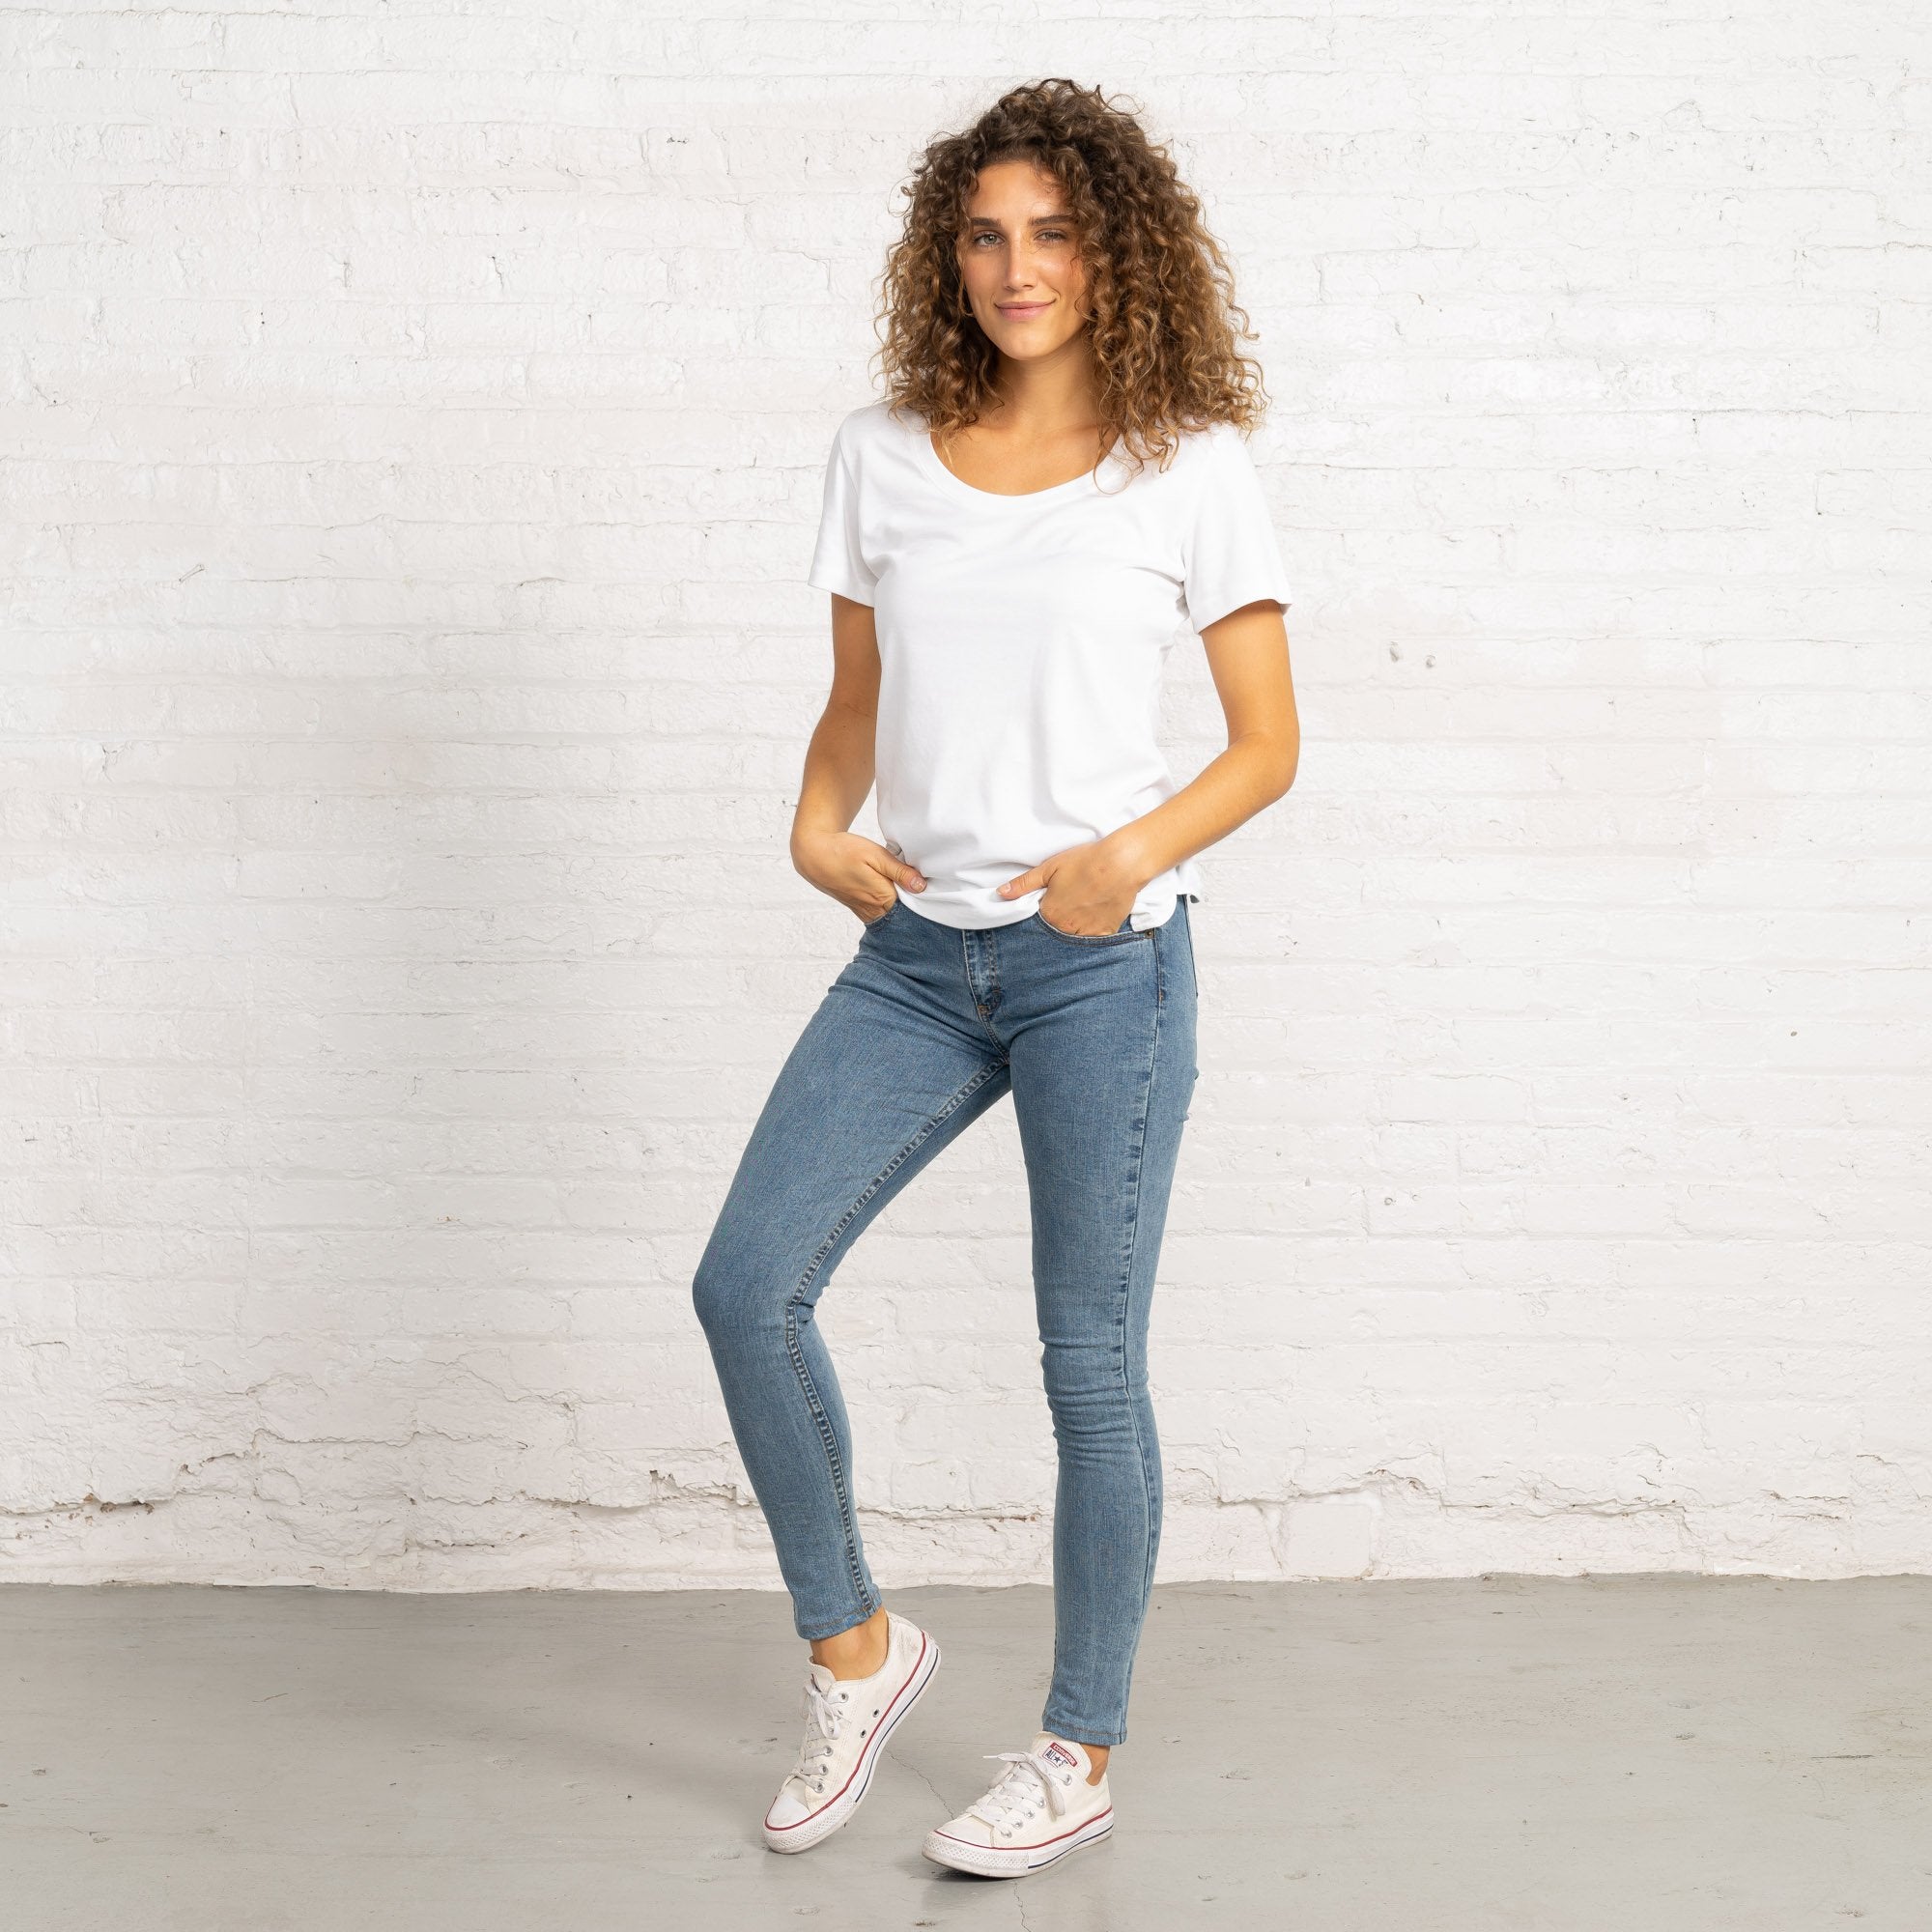 Women's Jeans - Dearborn Denim & Apparel